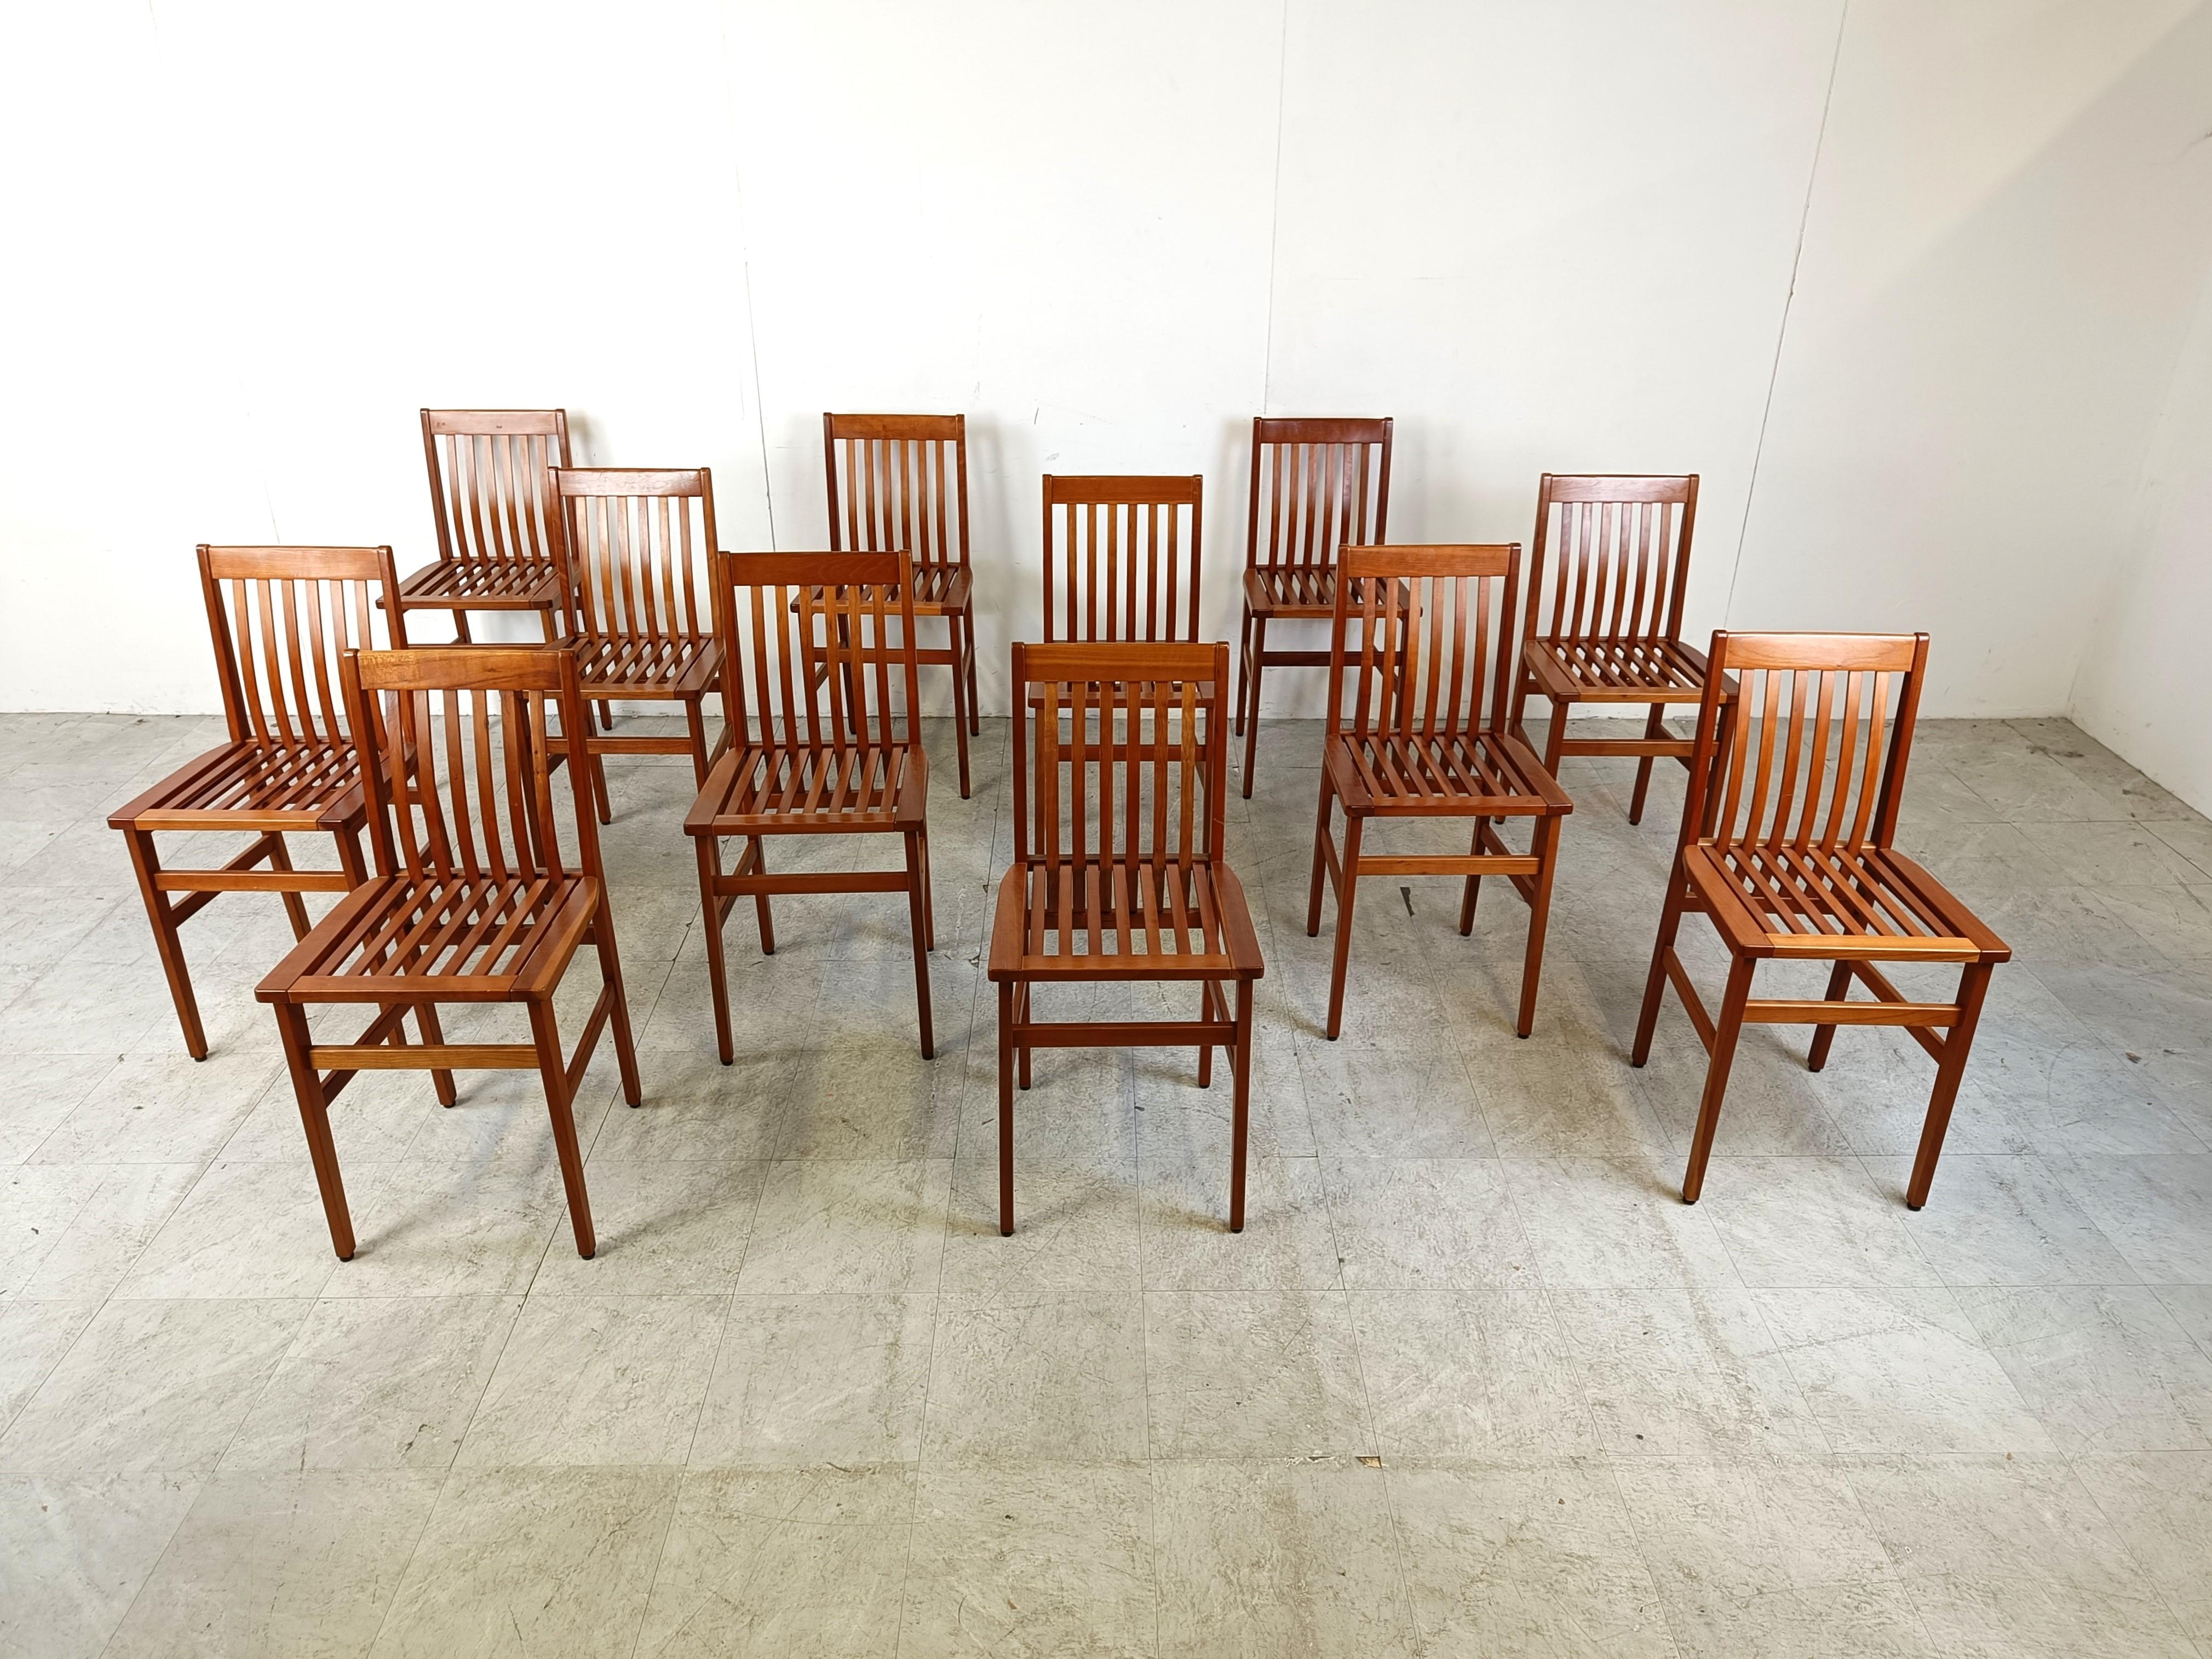 Ensemble de 12 chaises de salle à manger Milano conçues en 1987 par Aldo Rossi pour Molteni.

Exposée dans la collection permanente du musée Molteni, c'est actuellement une chaise assez rare à trouver car elle n'est plus produite.

Il est très rare